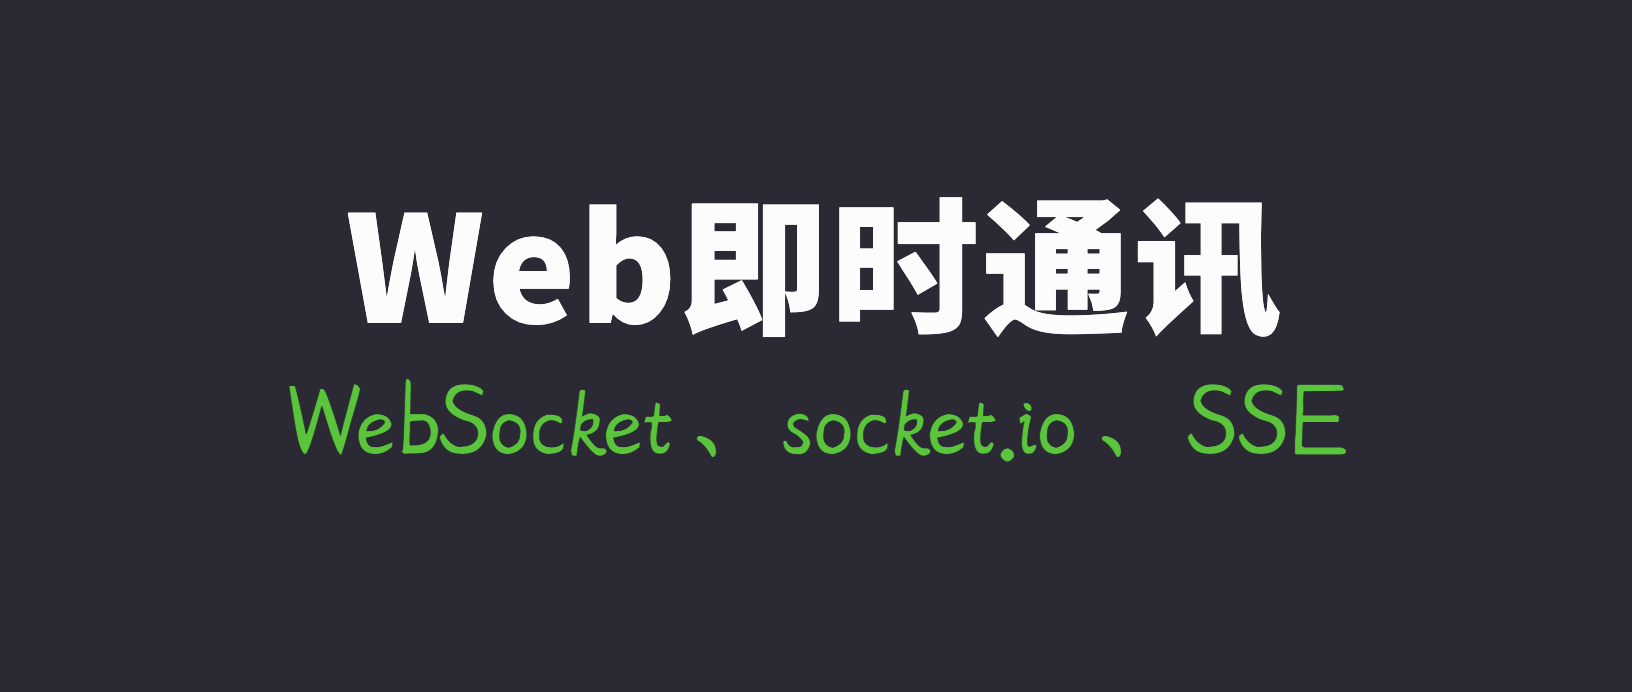 搞懂现代Web端即时通讯技术一文就够：WebSocket、socket.io、SSE